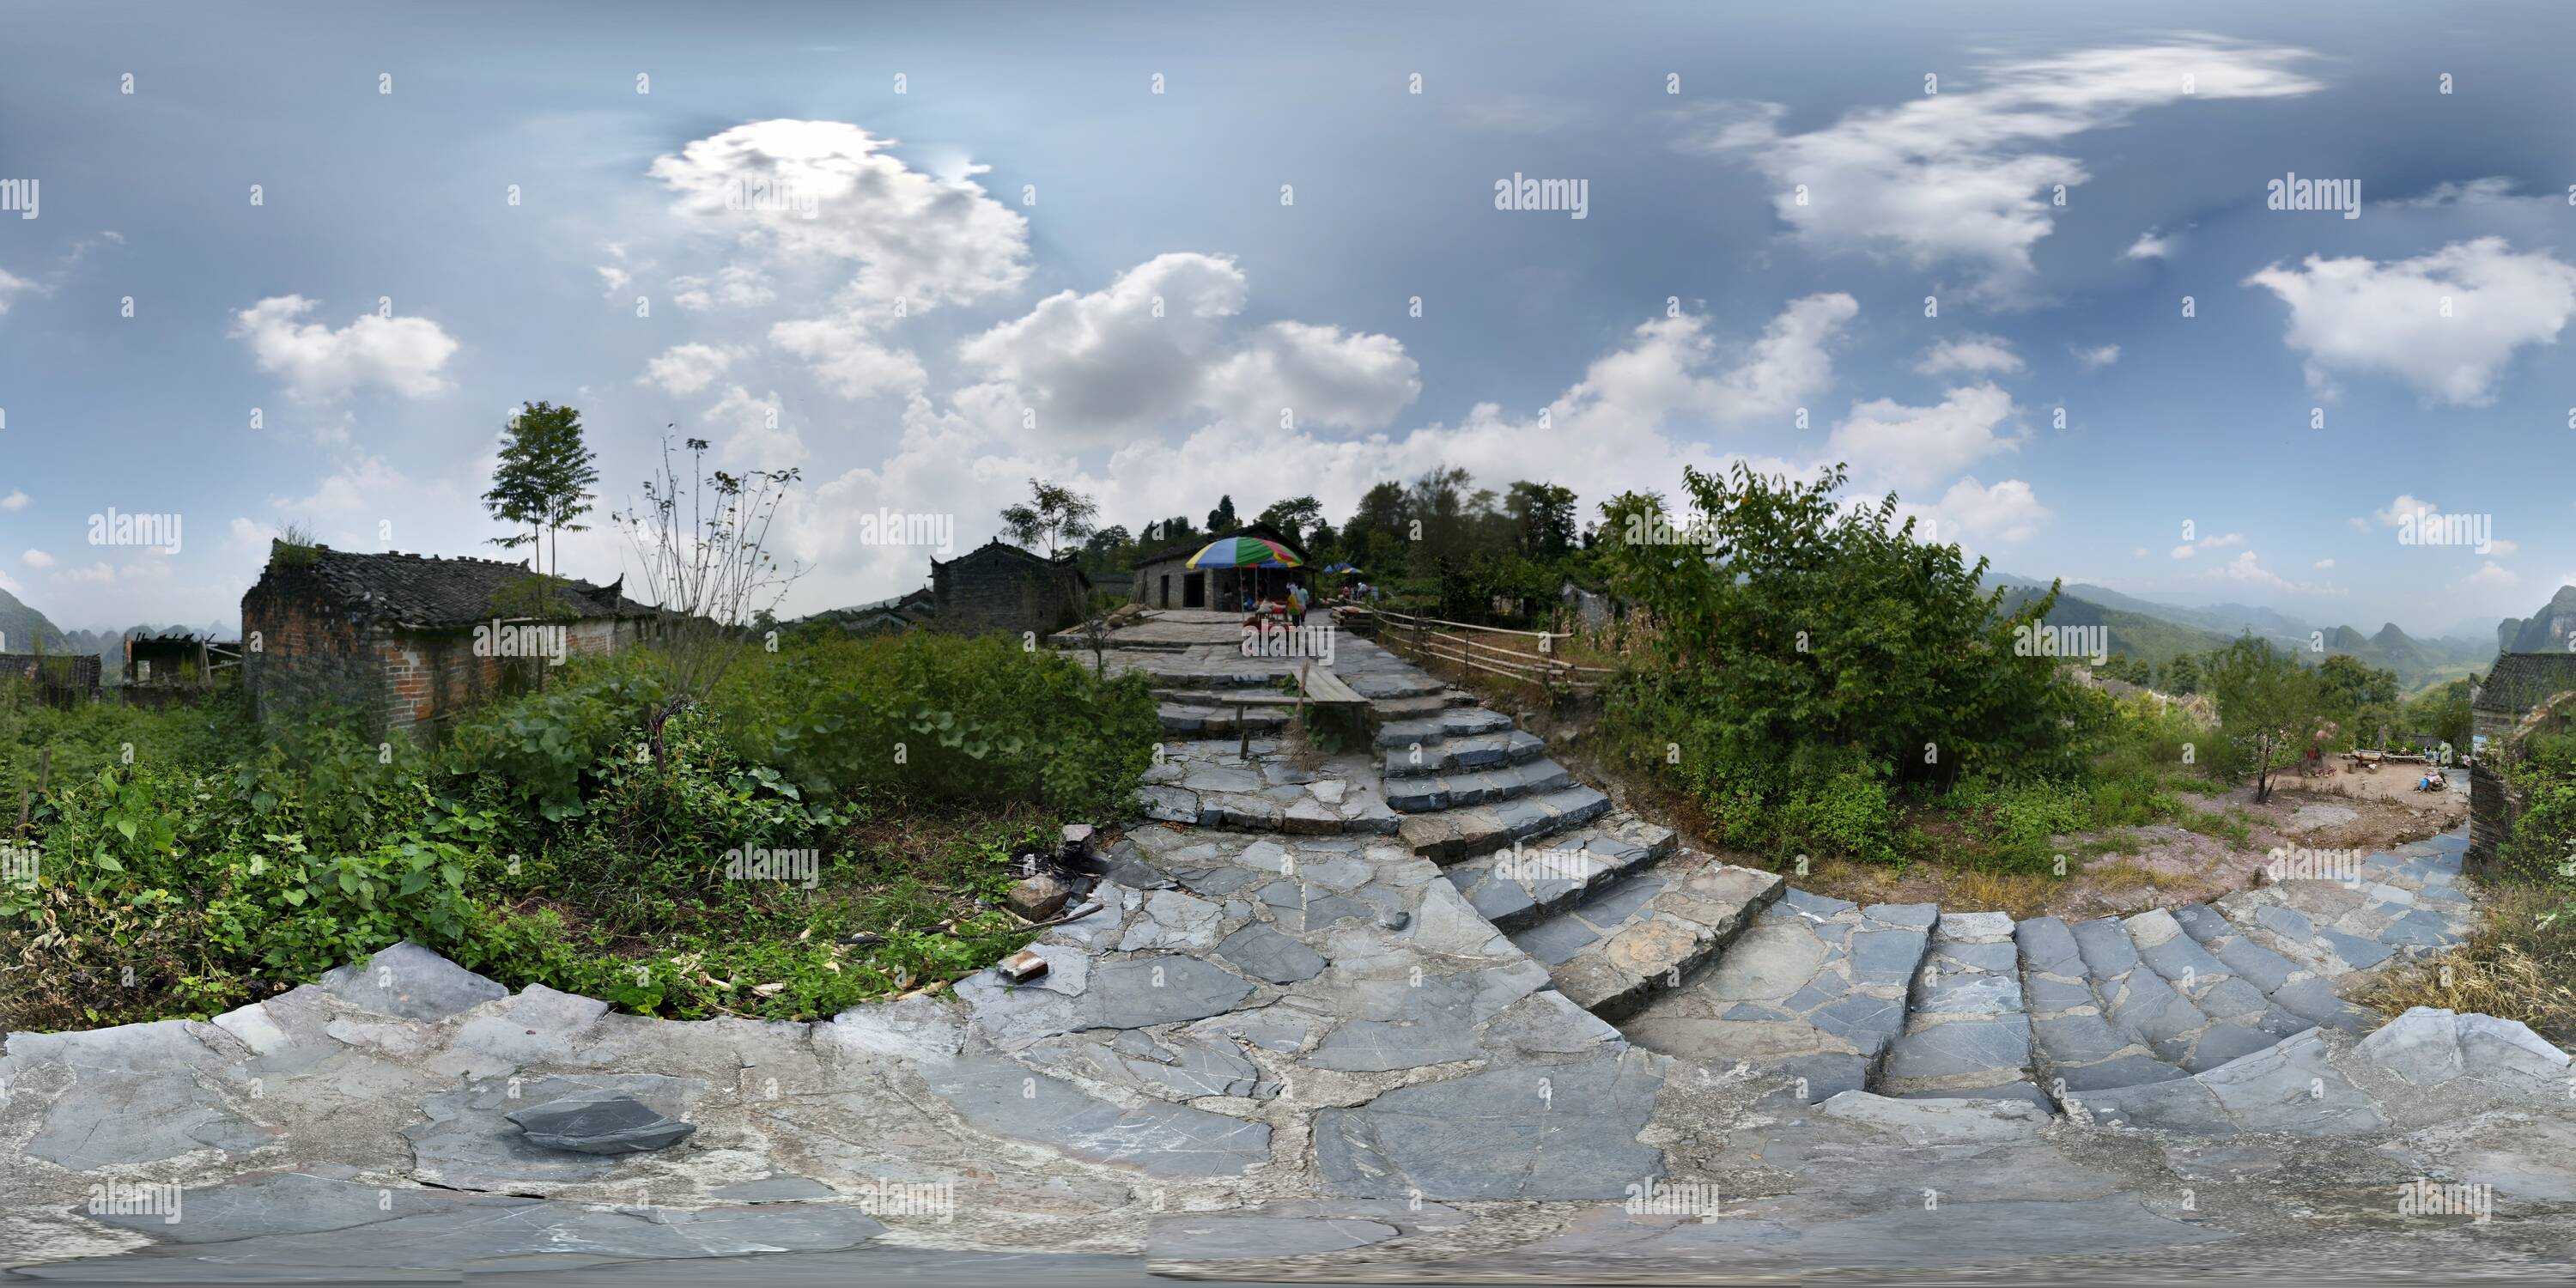 360 degree panoramic view of Pano 20140907 110953